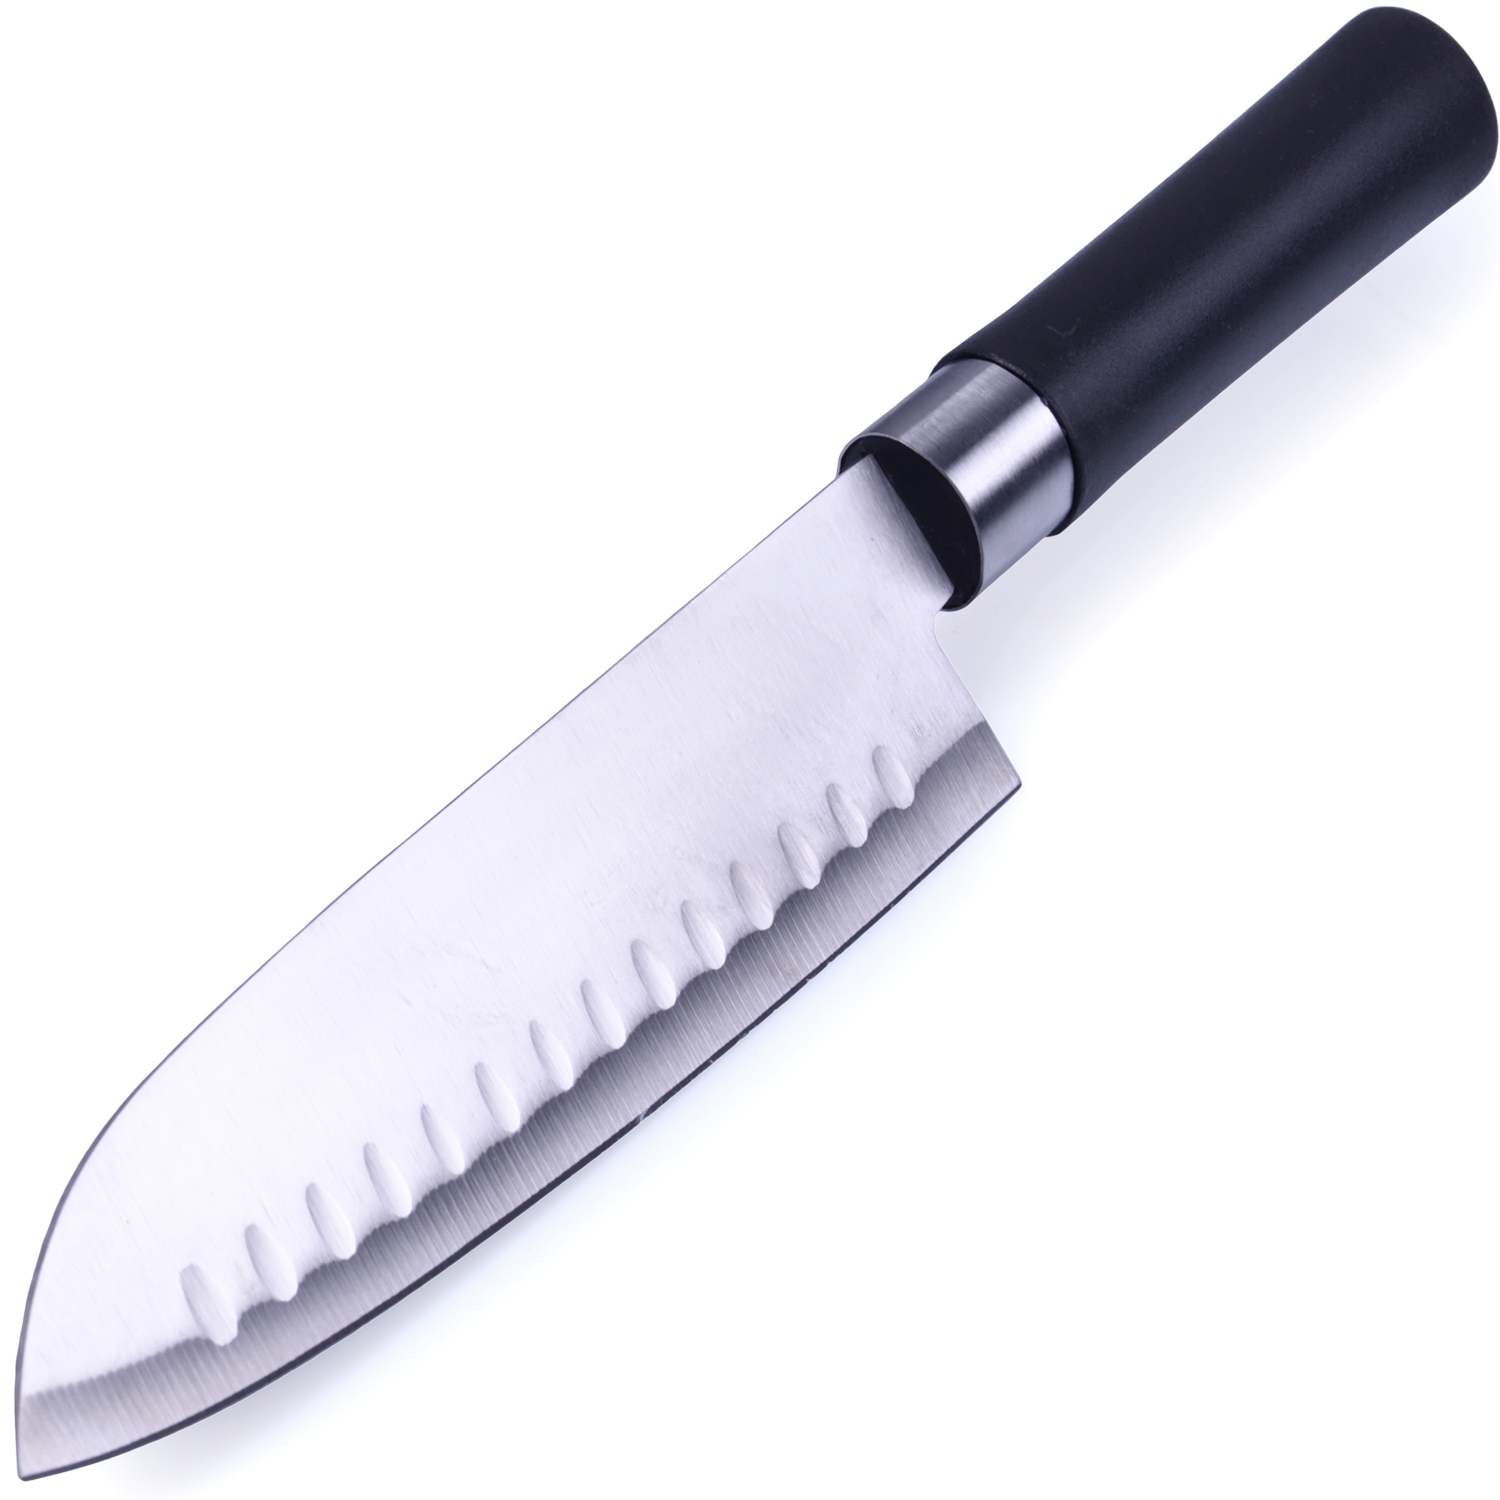 фото Набор ножей Mayer & Boch, цвет: серебристый, 3 шт. 28116